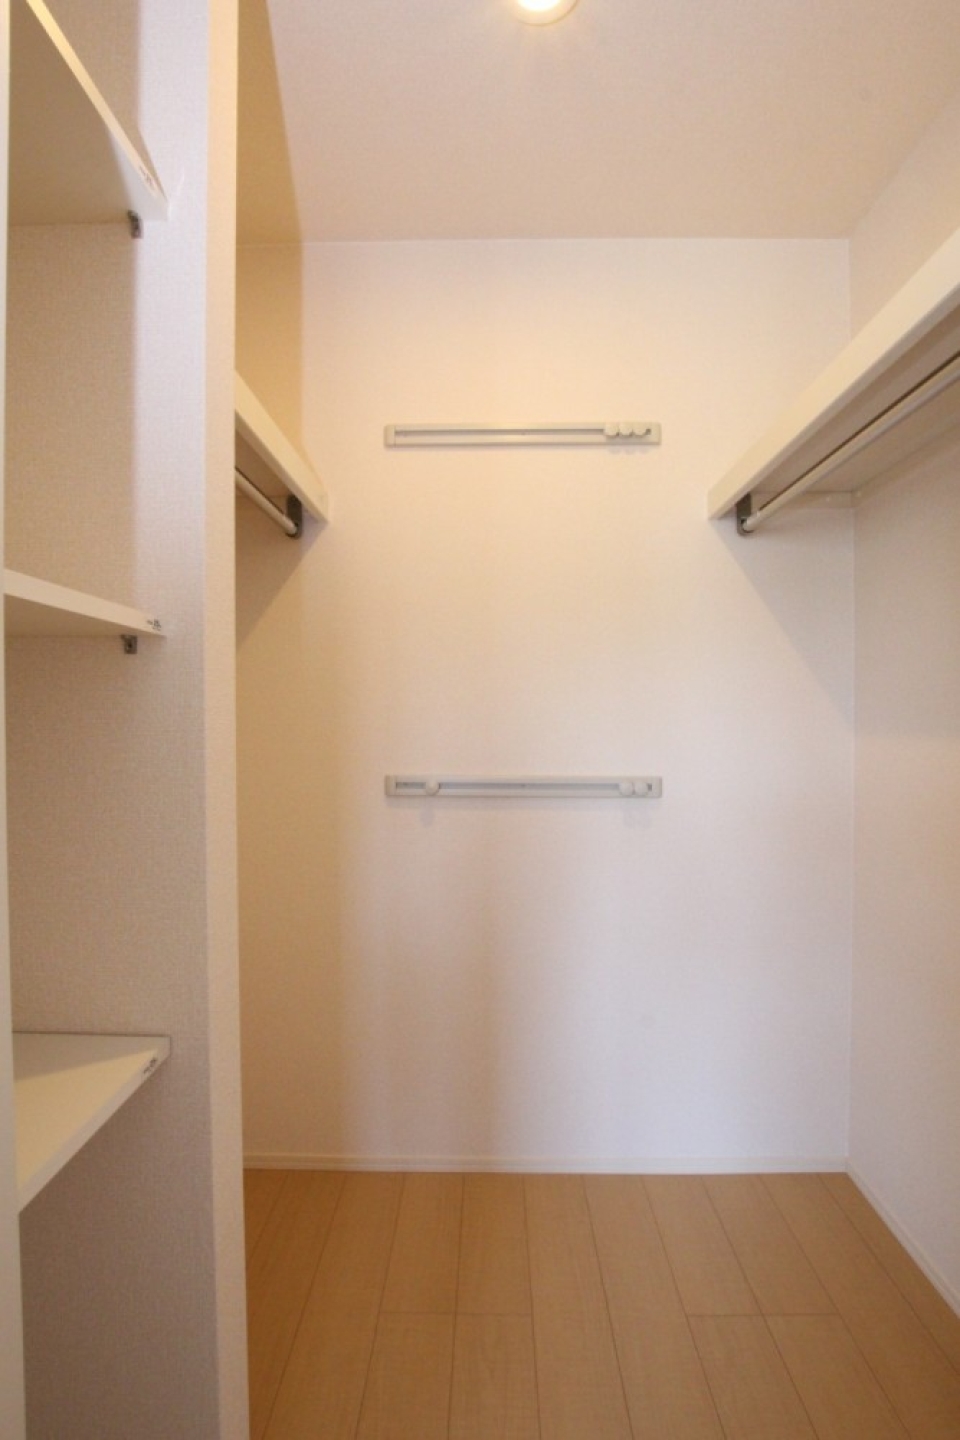 収納スペースには、便利な棚やハンガーかけなどの設備が充実しています。